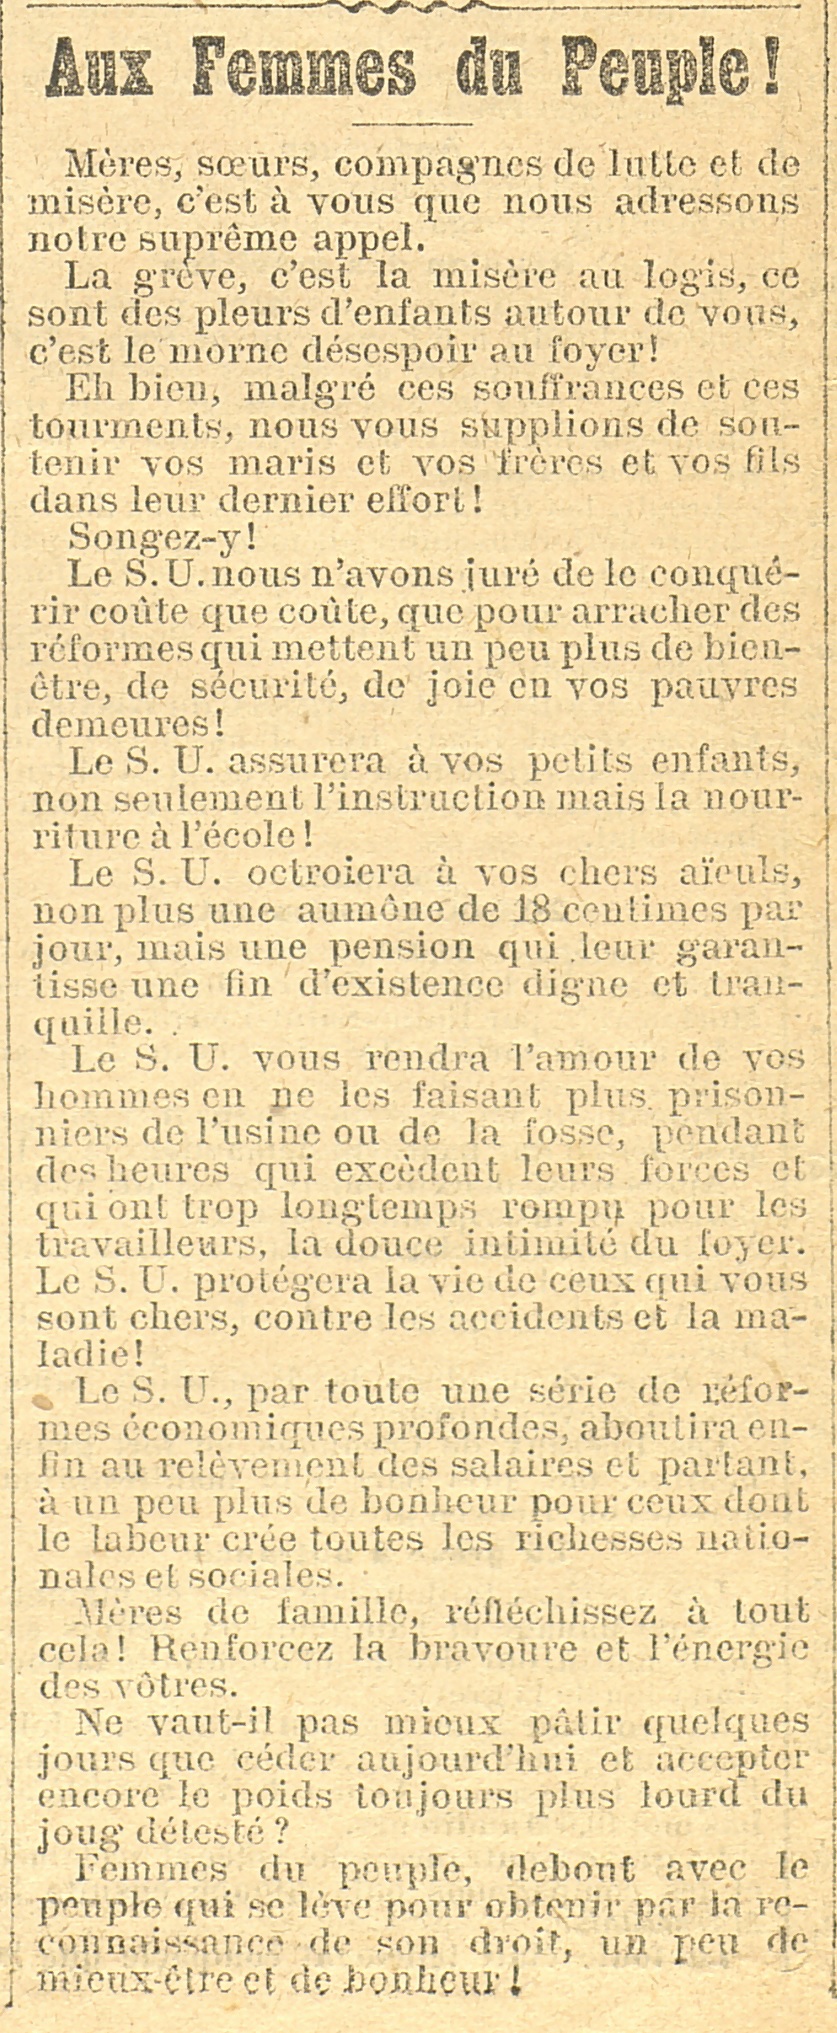 Stadsarchief Leuven, Le Peuple, 20 april 1902